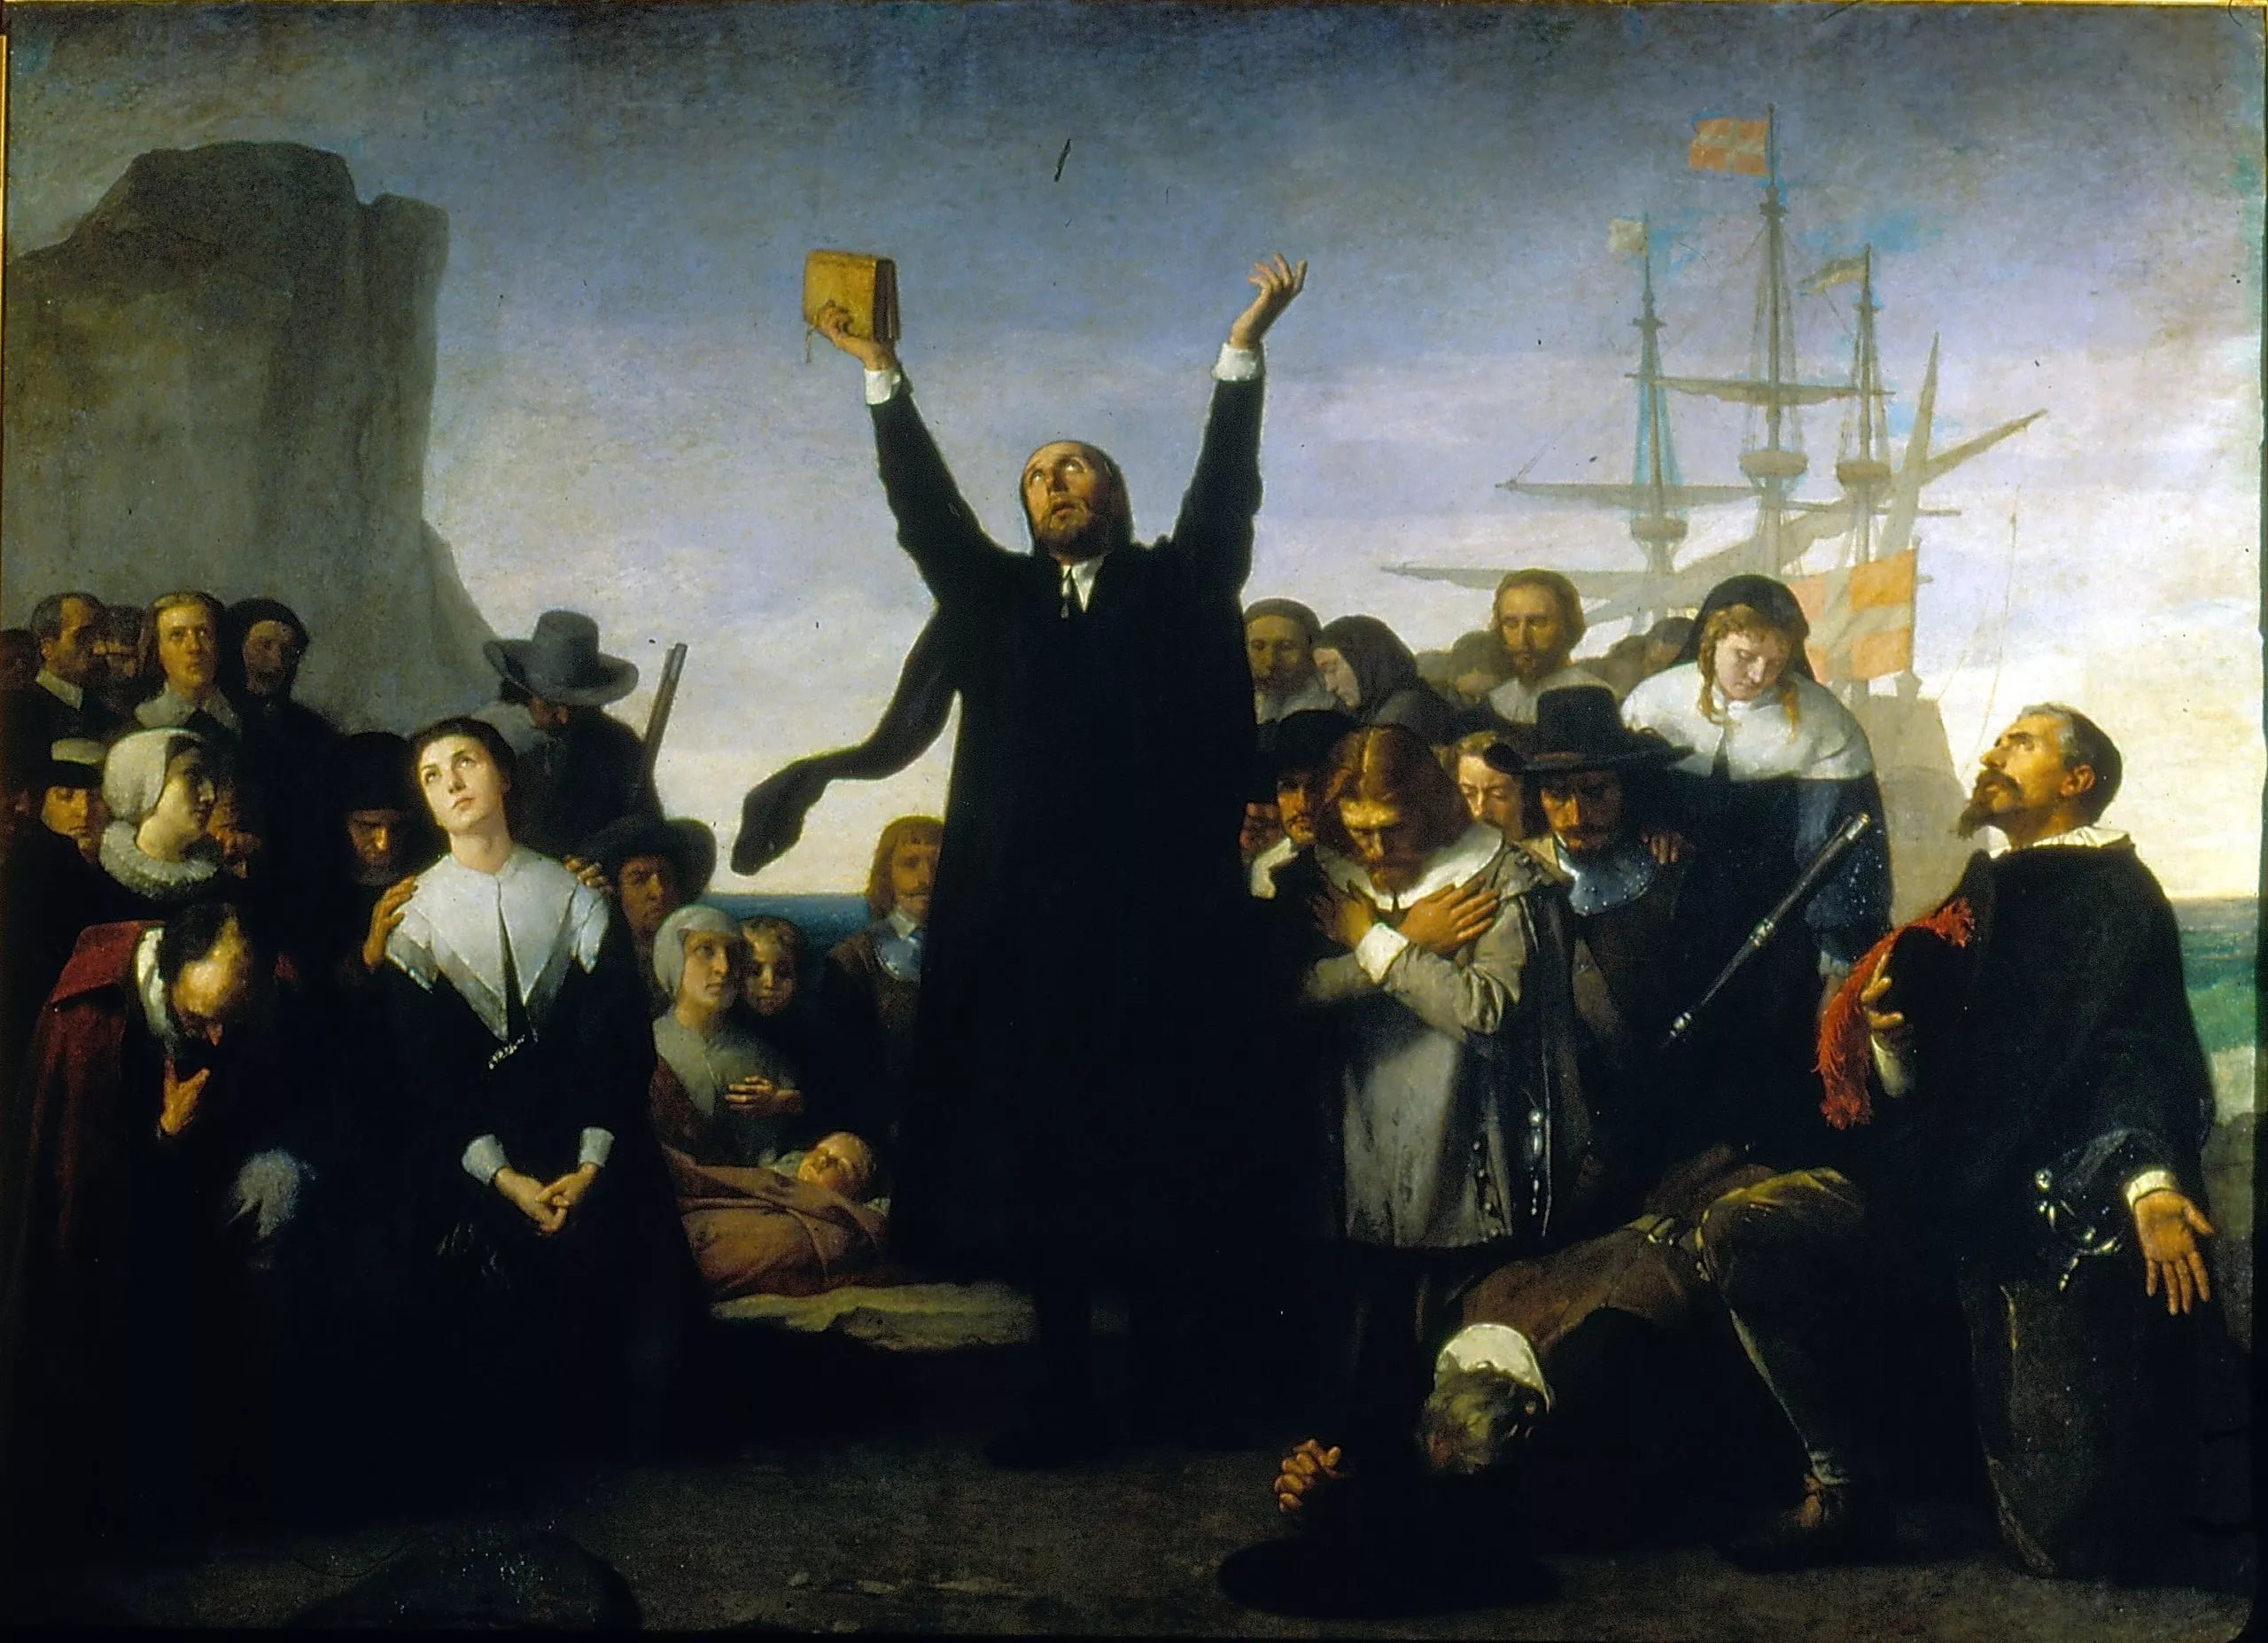 Els puritans arriben a Amèrica el 1620 després de creuar l’Atlàntic a bord del Mayflower